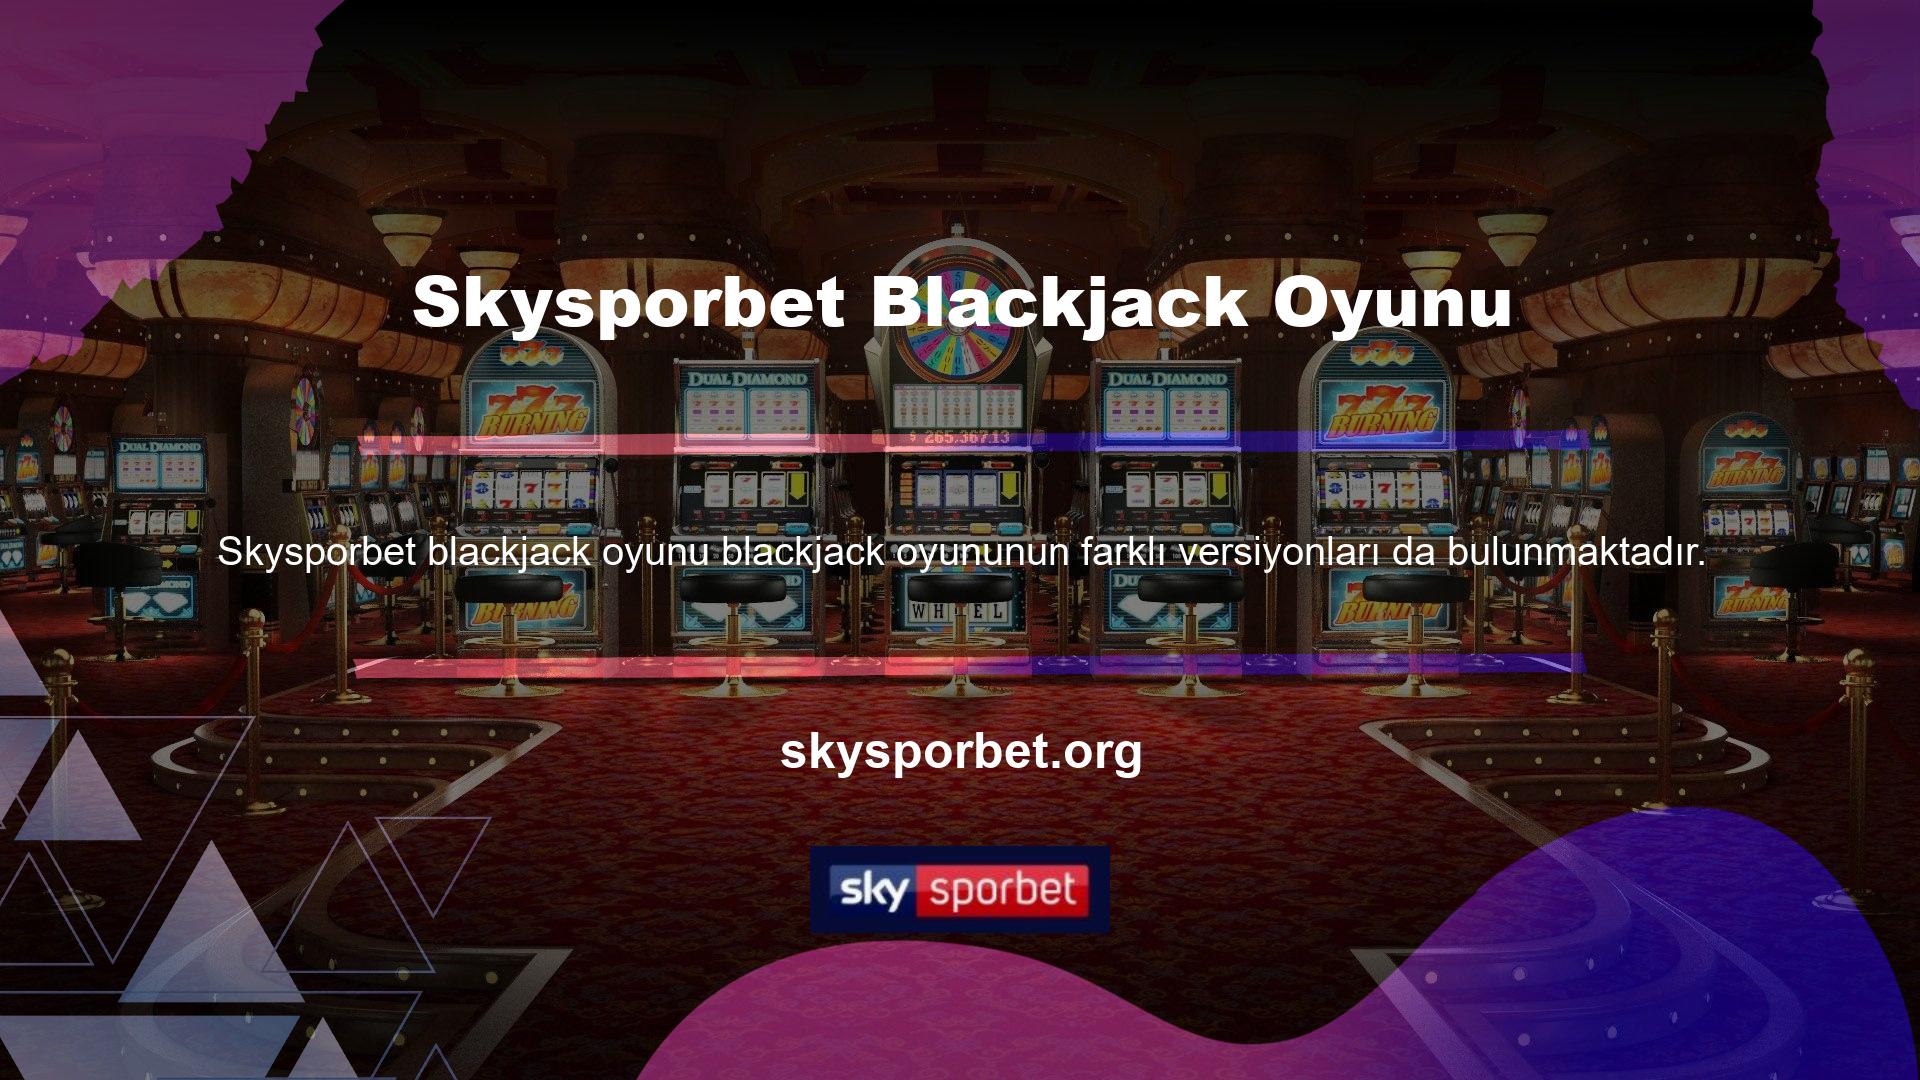 Ancak ister yüksek limit ister düşük Skysporbet blackjack oyunu limit olsun her türden oyuncuya hitap eder